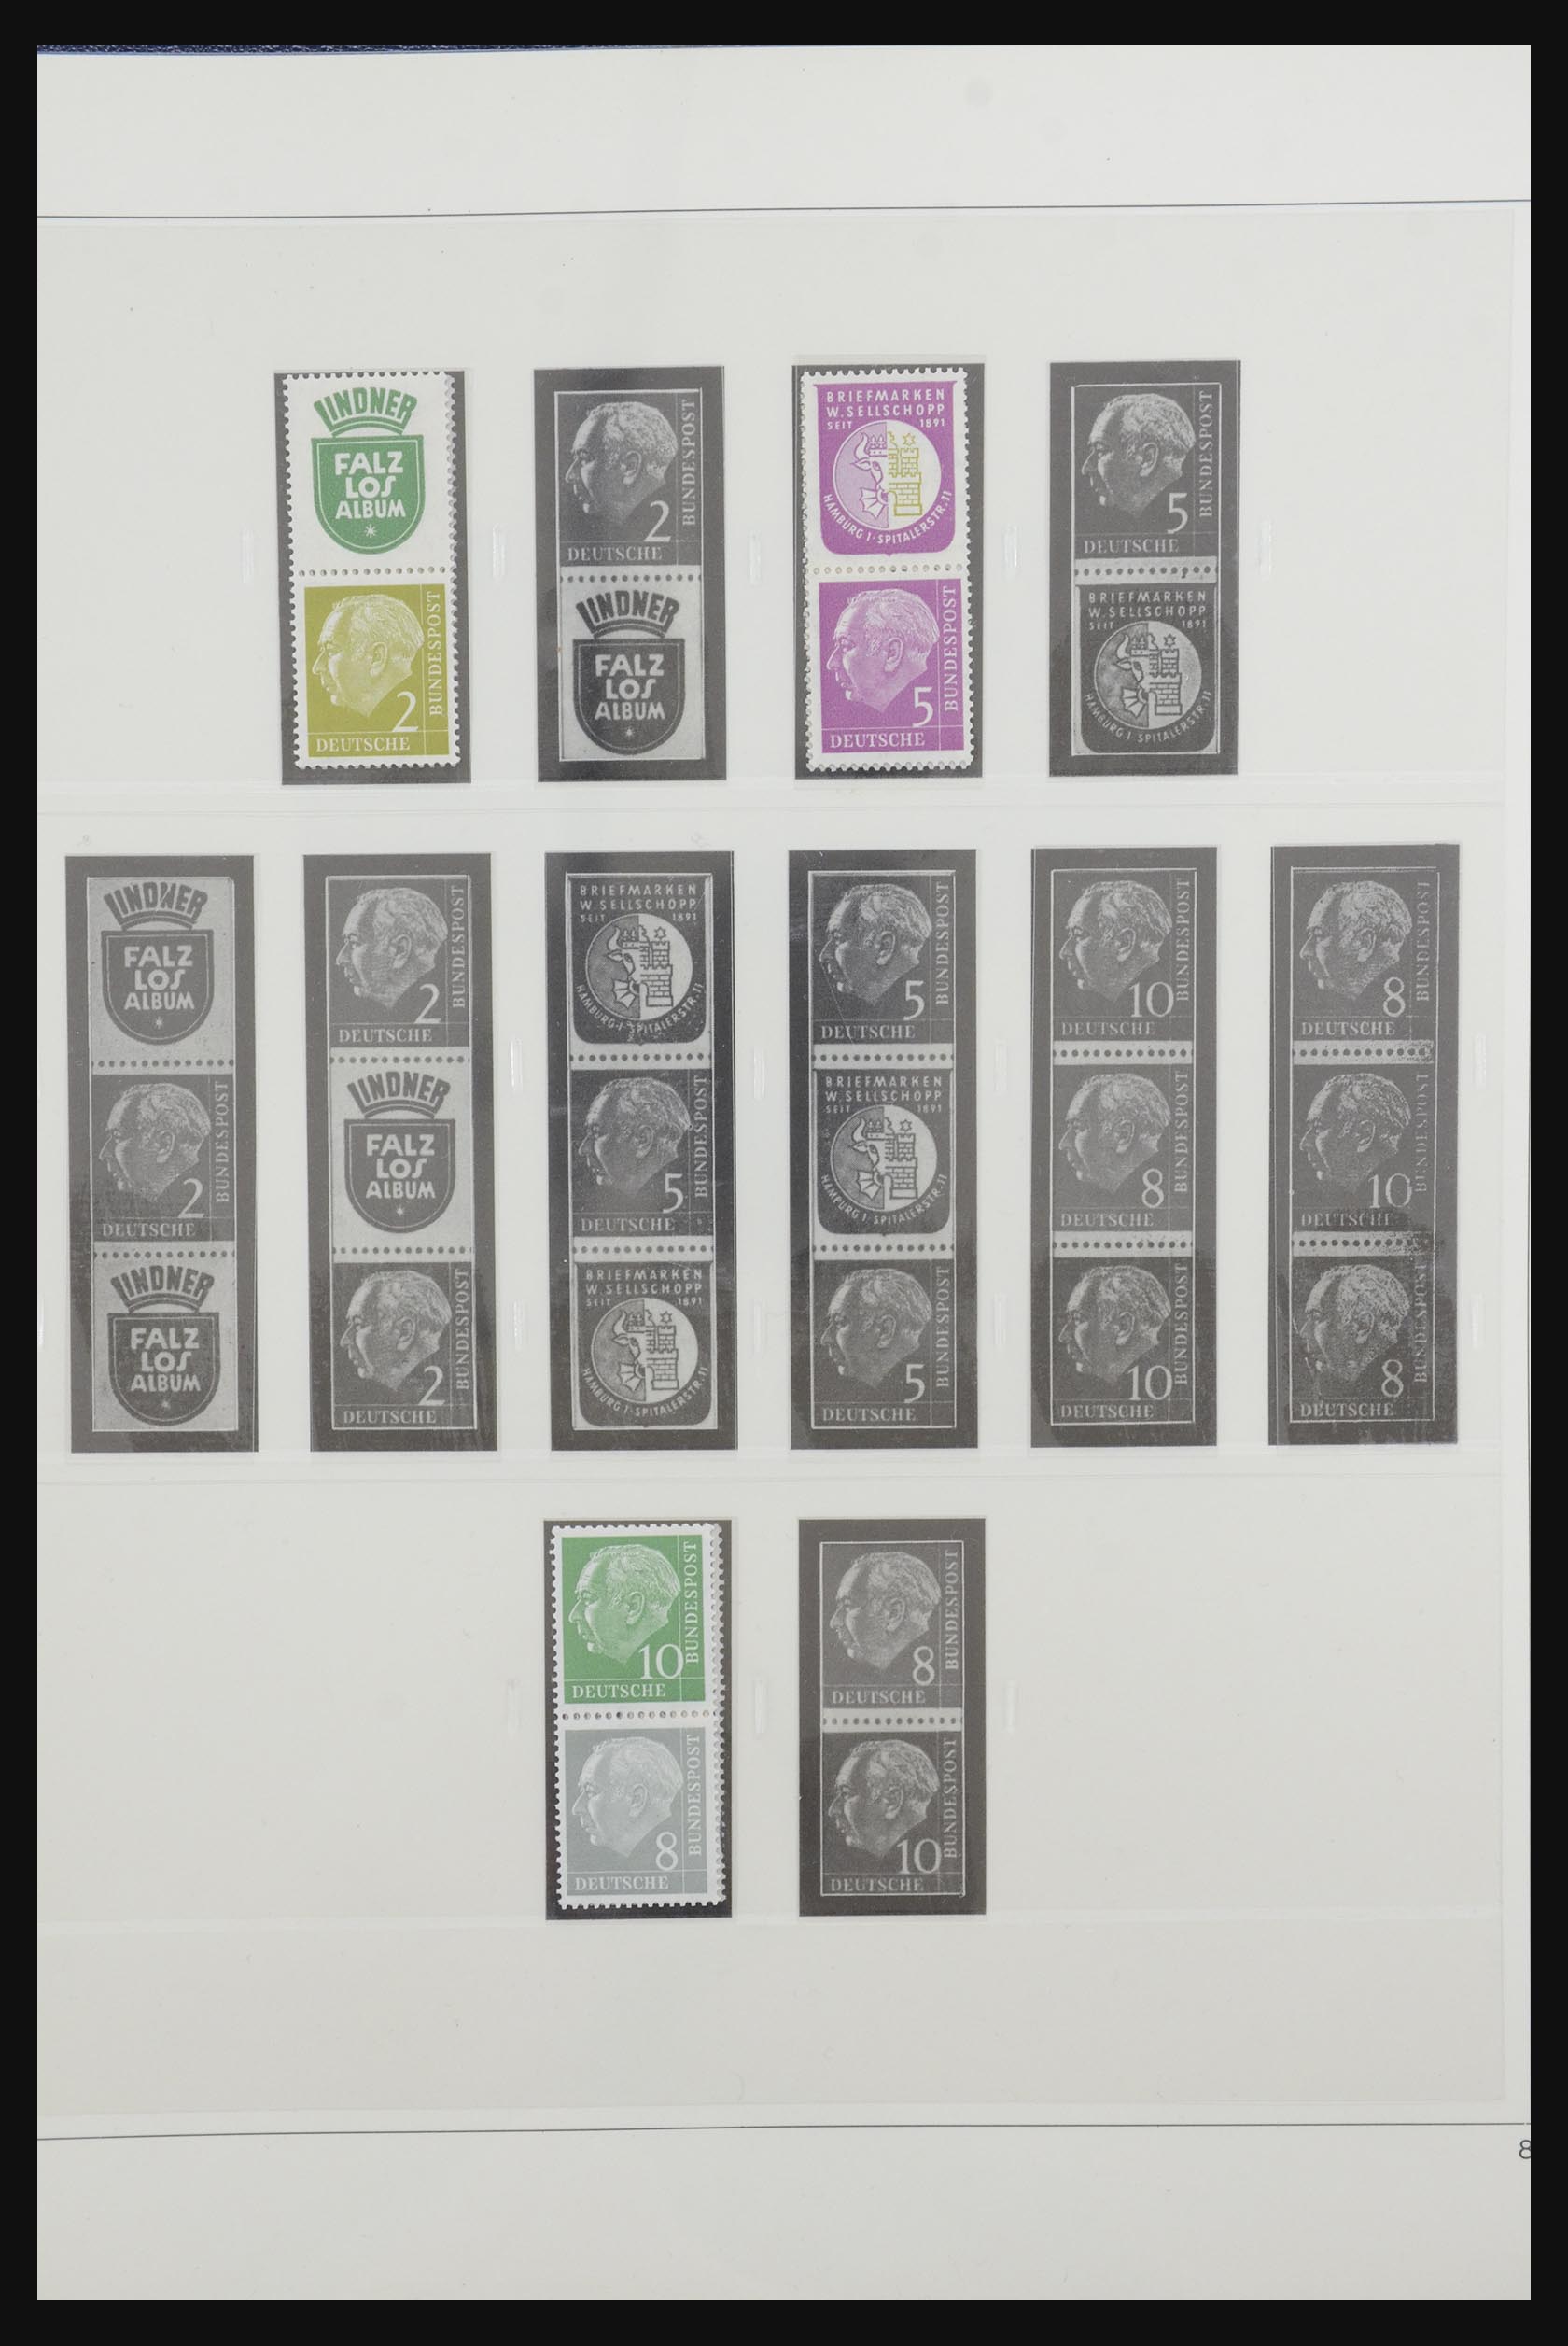 31842 010 - 31842 Bundespost combinations 1951-2003.